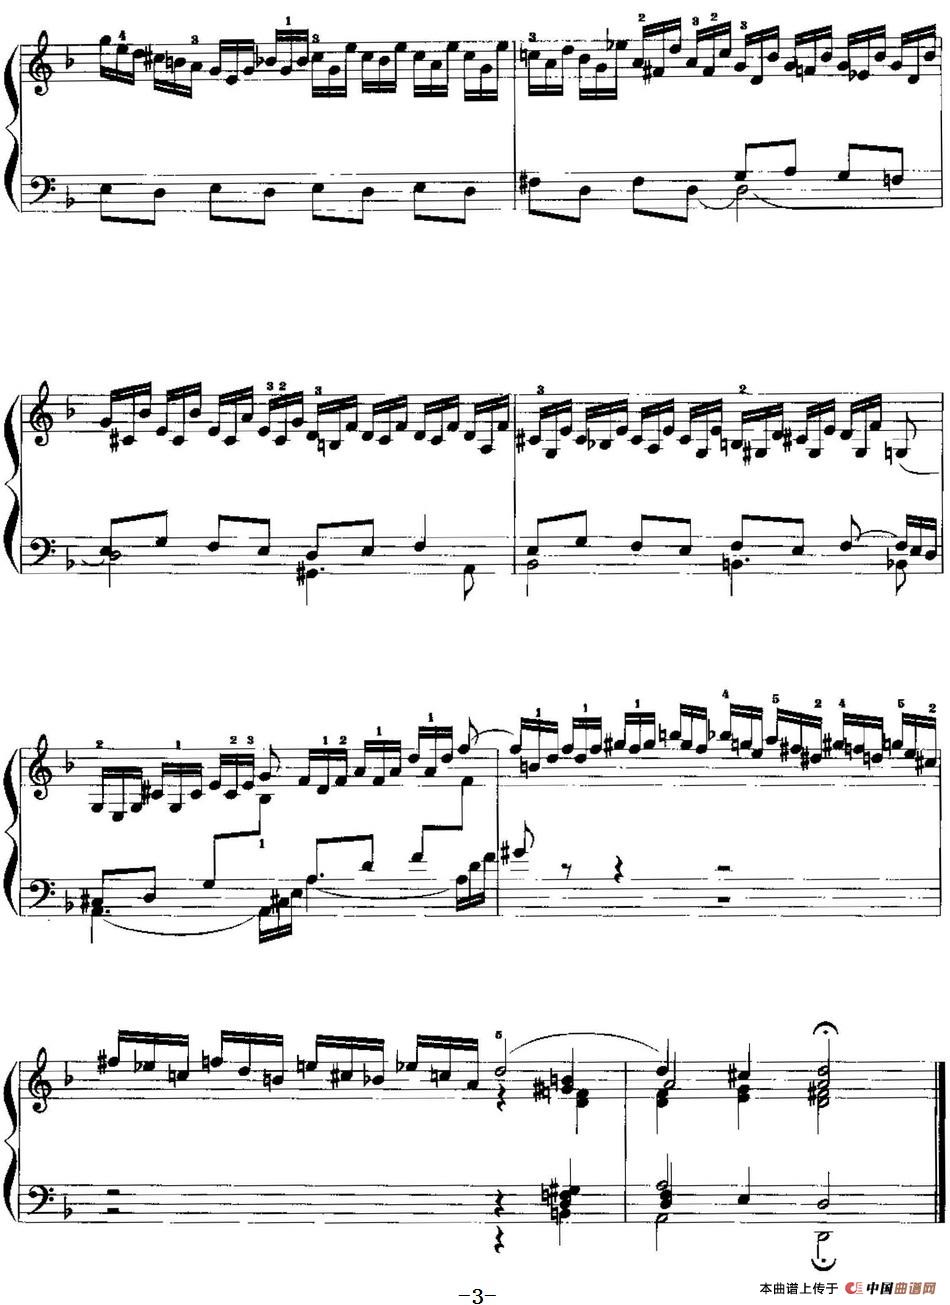 手风琴复调作品：d小调前奏曲与赋格手风琴谱（线简谱对照、带指法版）